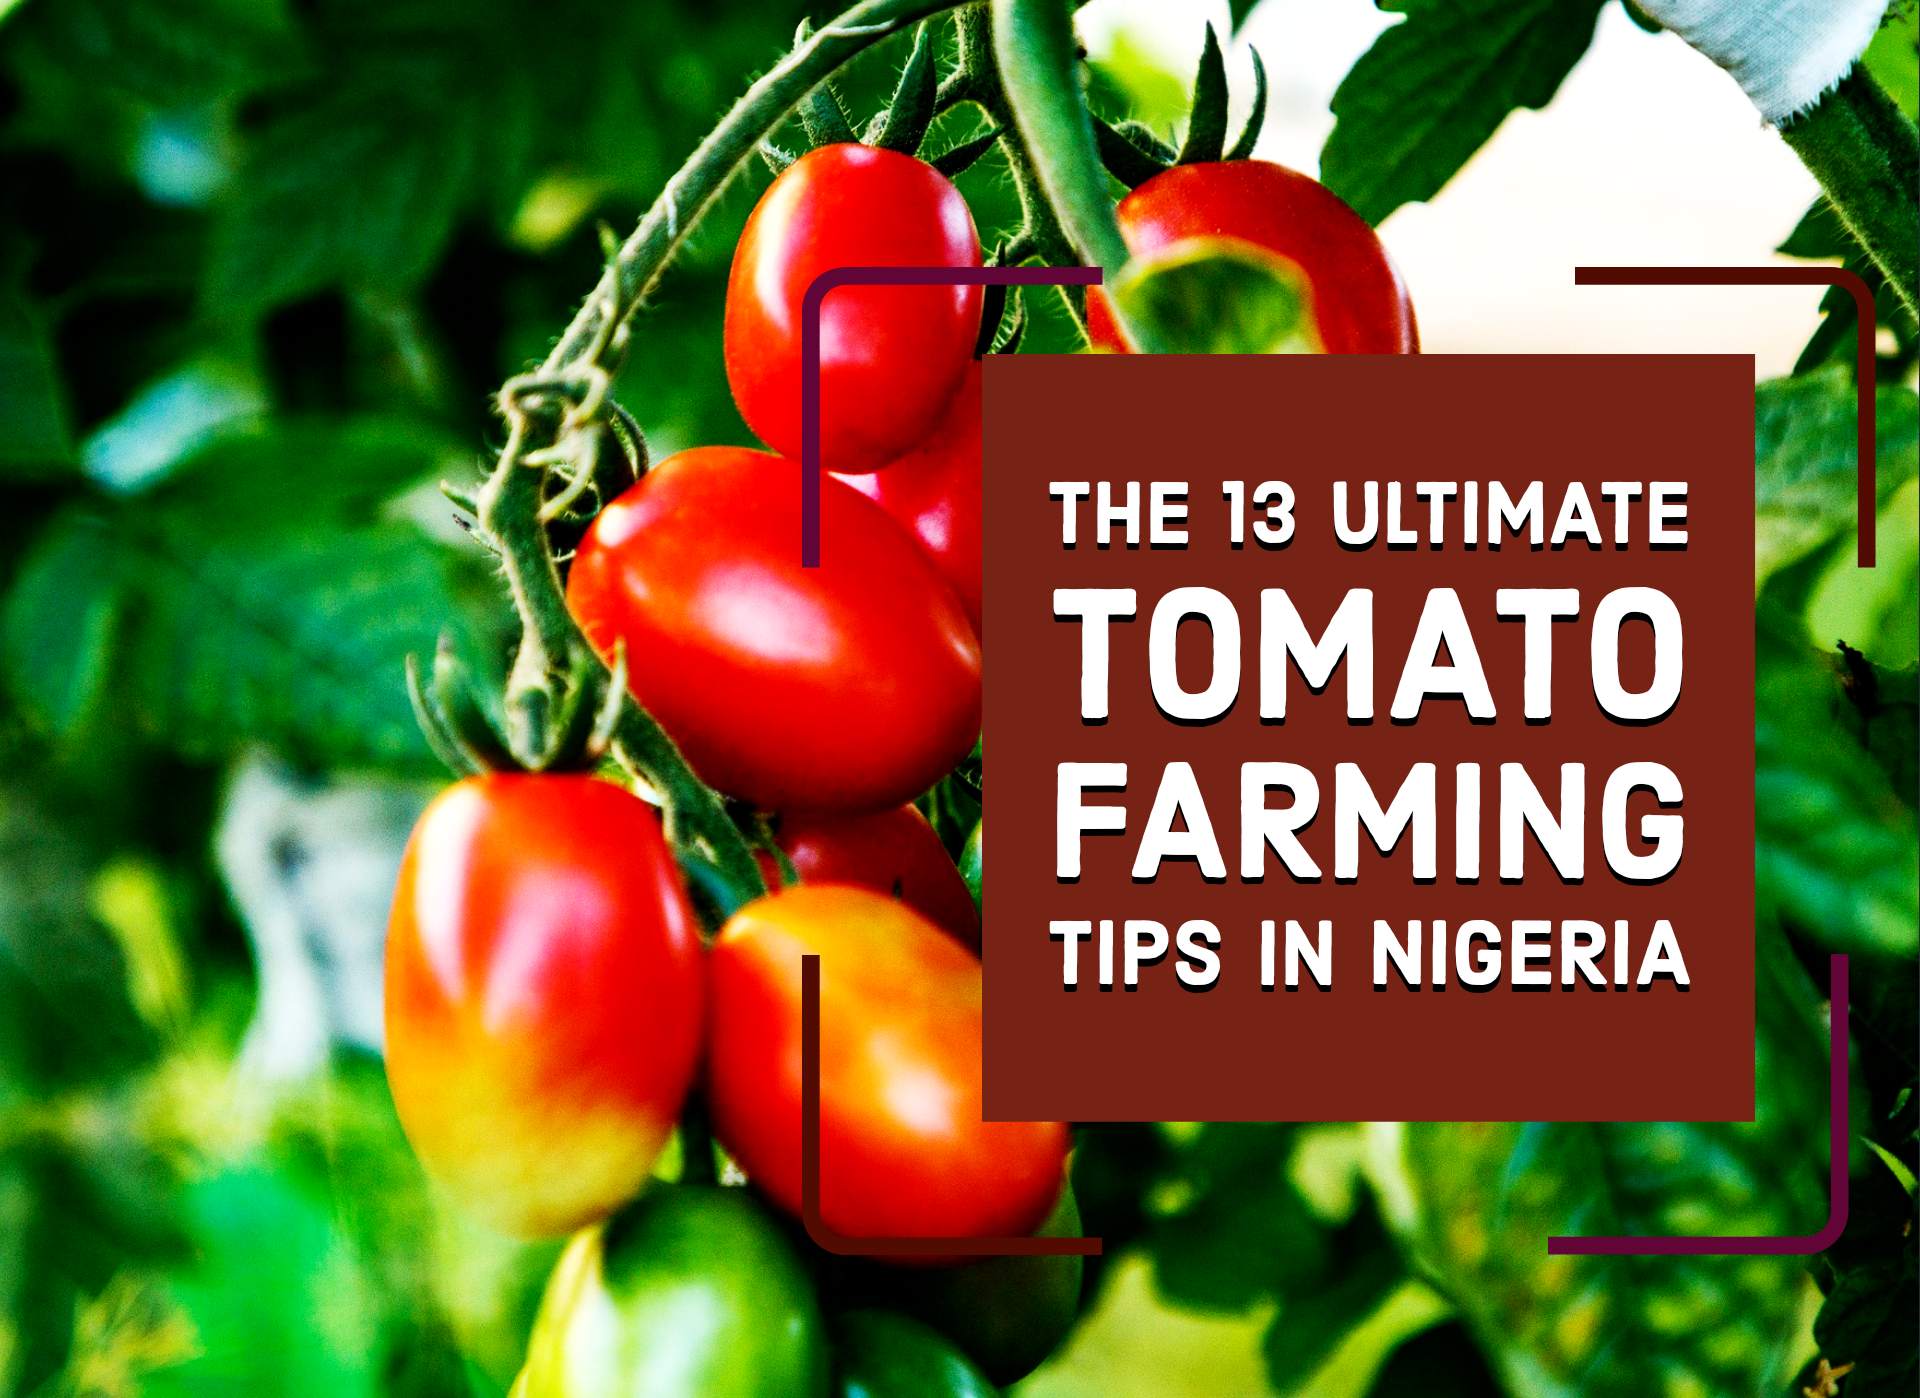 The 13 Ultimate Tomato Farming Tips in Nigeria